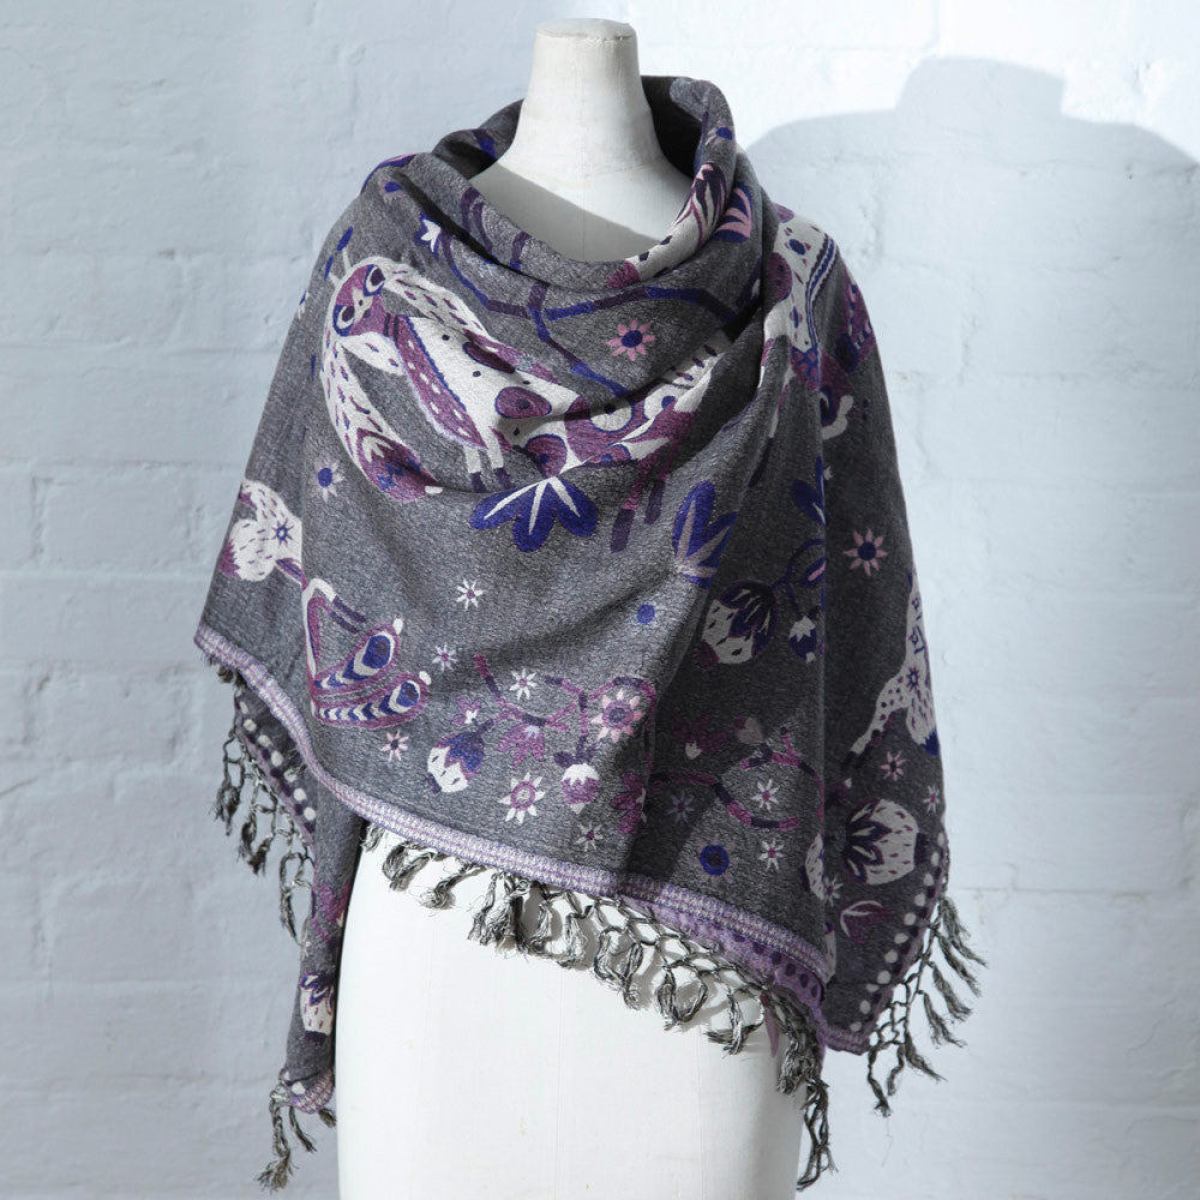 Gewebtes Halstuch mit Hasen-Motiv (violett) aus Wolle und Seide (150 x 150 cm)